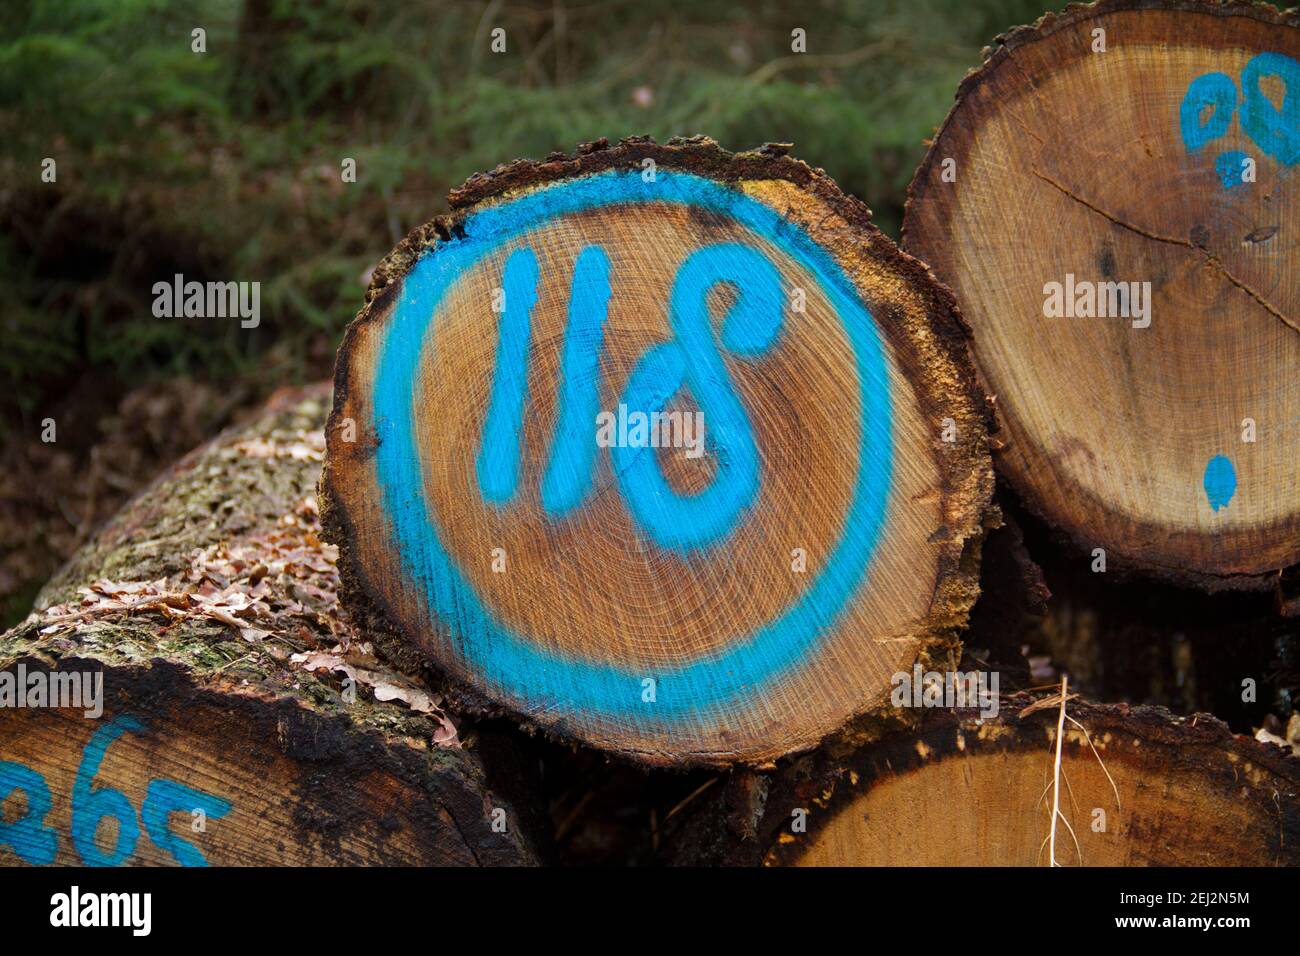 Haufen von Baumstämmen, einer davon blau mit der Nummer 118 markiert Stockfoto